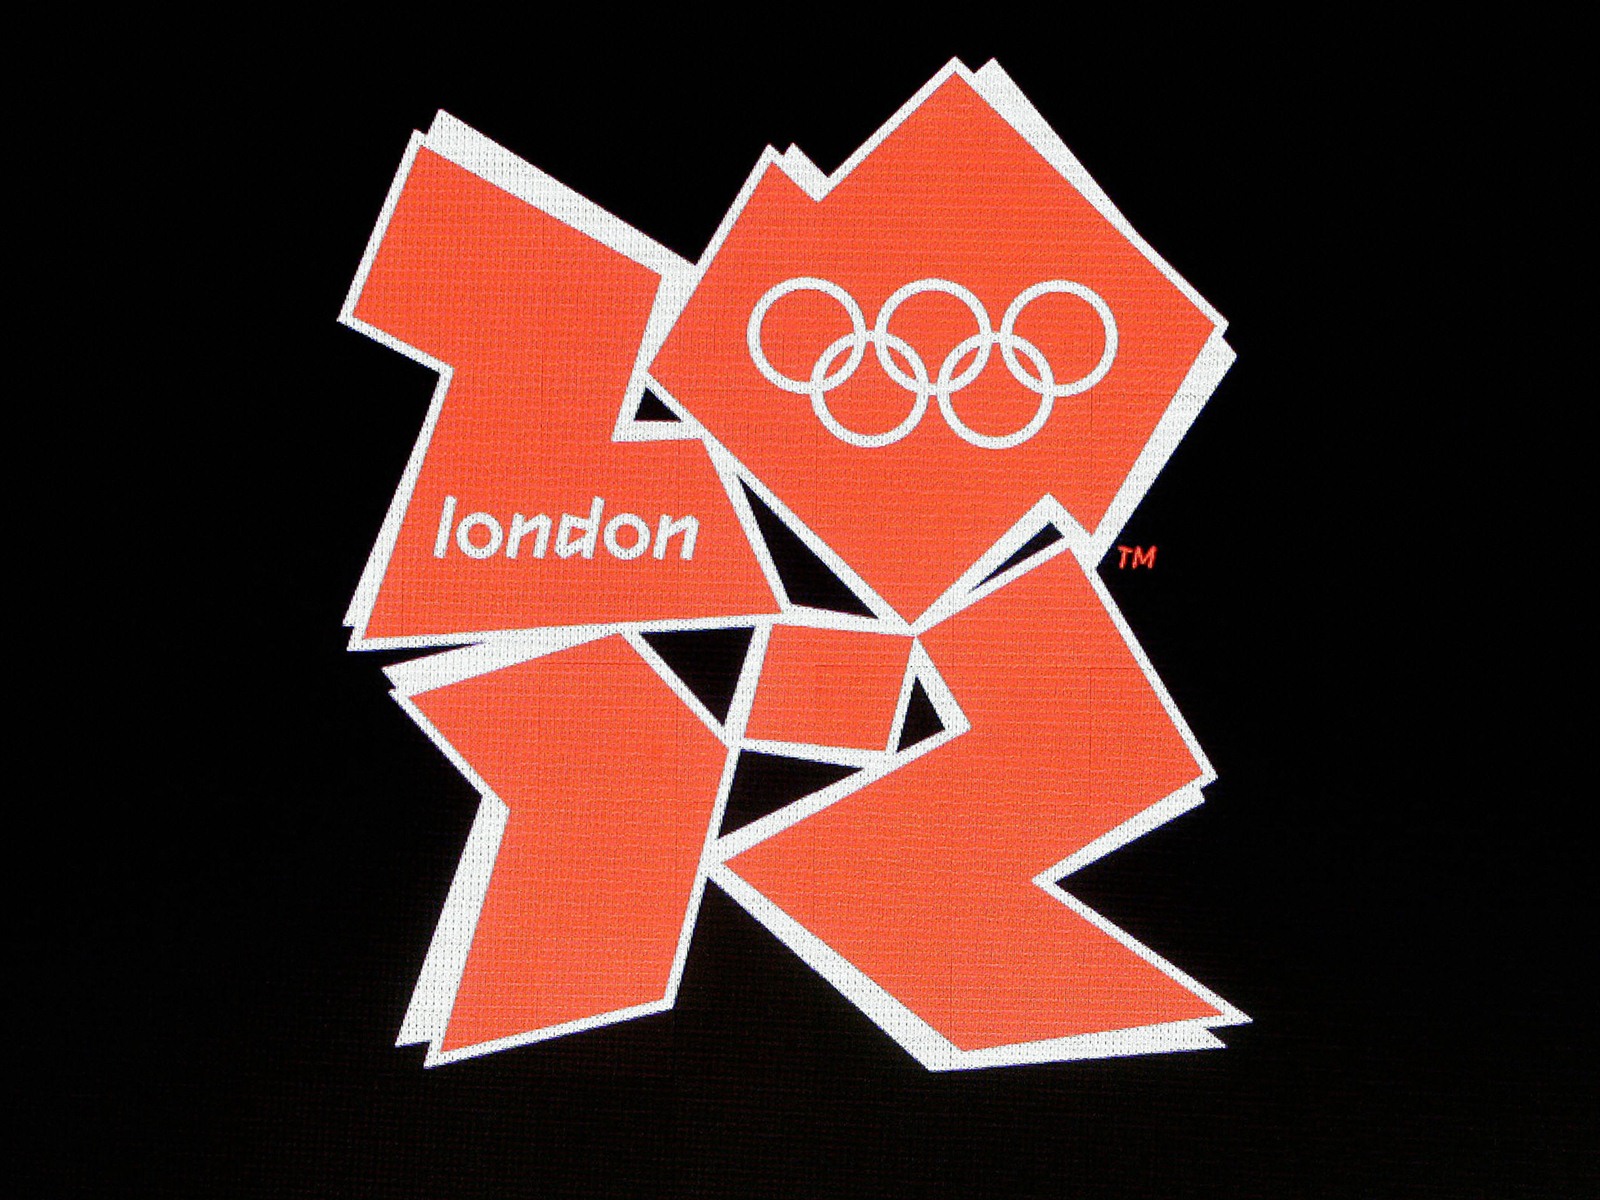 Londres 2012 Olimpiadas fondos temáticos (2) #30 - 1600x1200